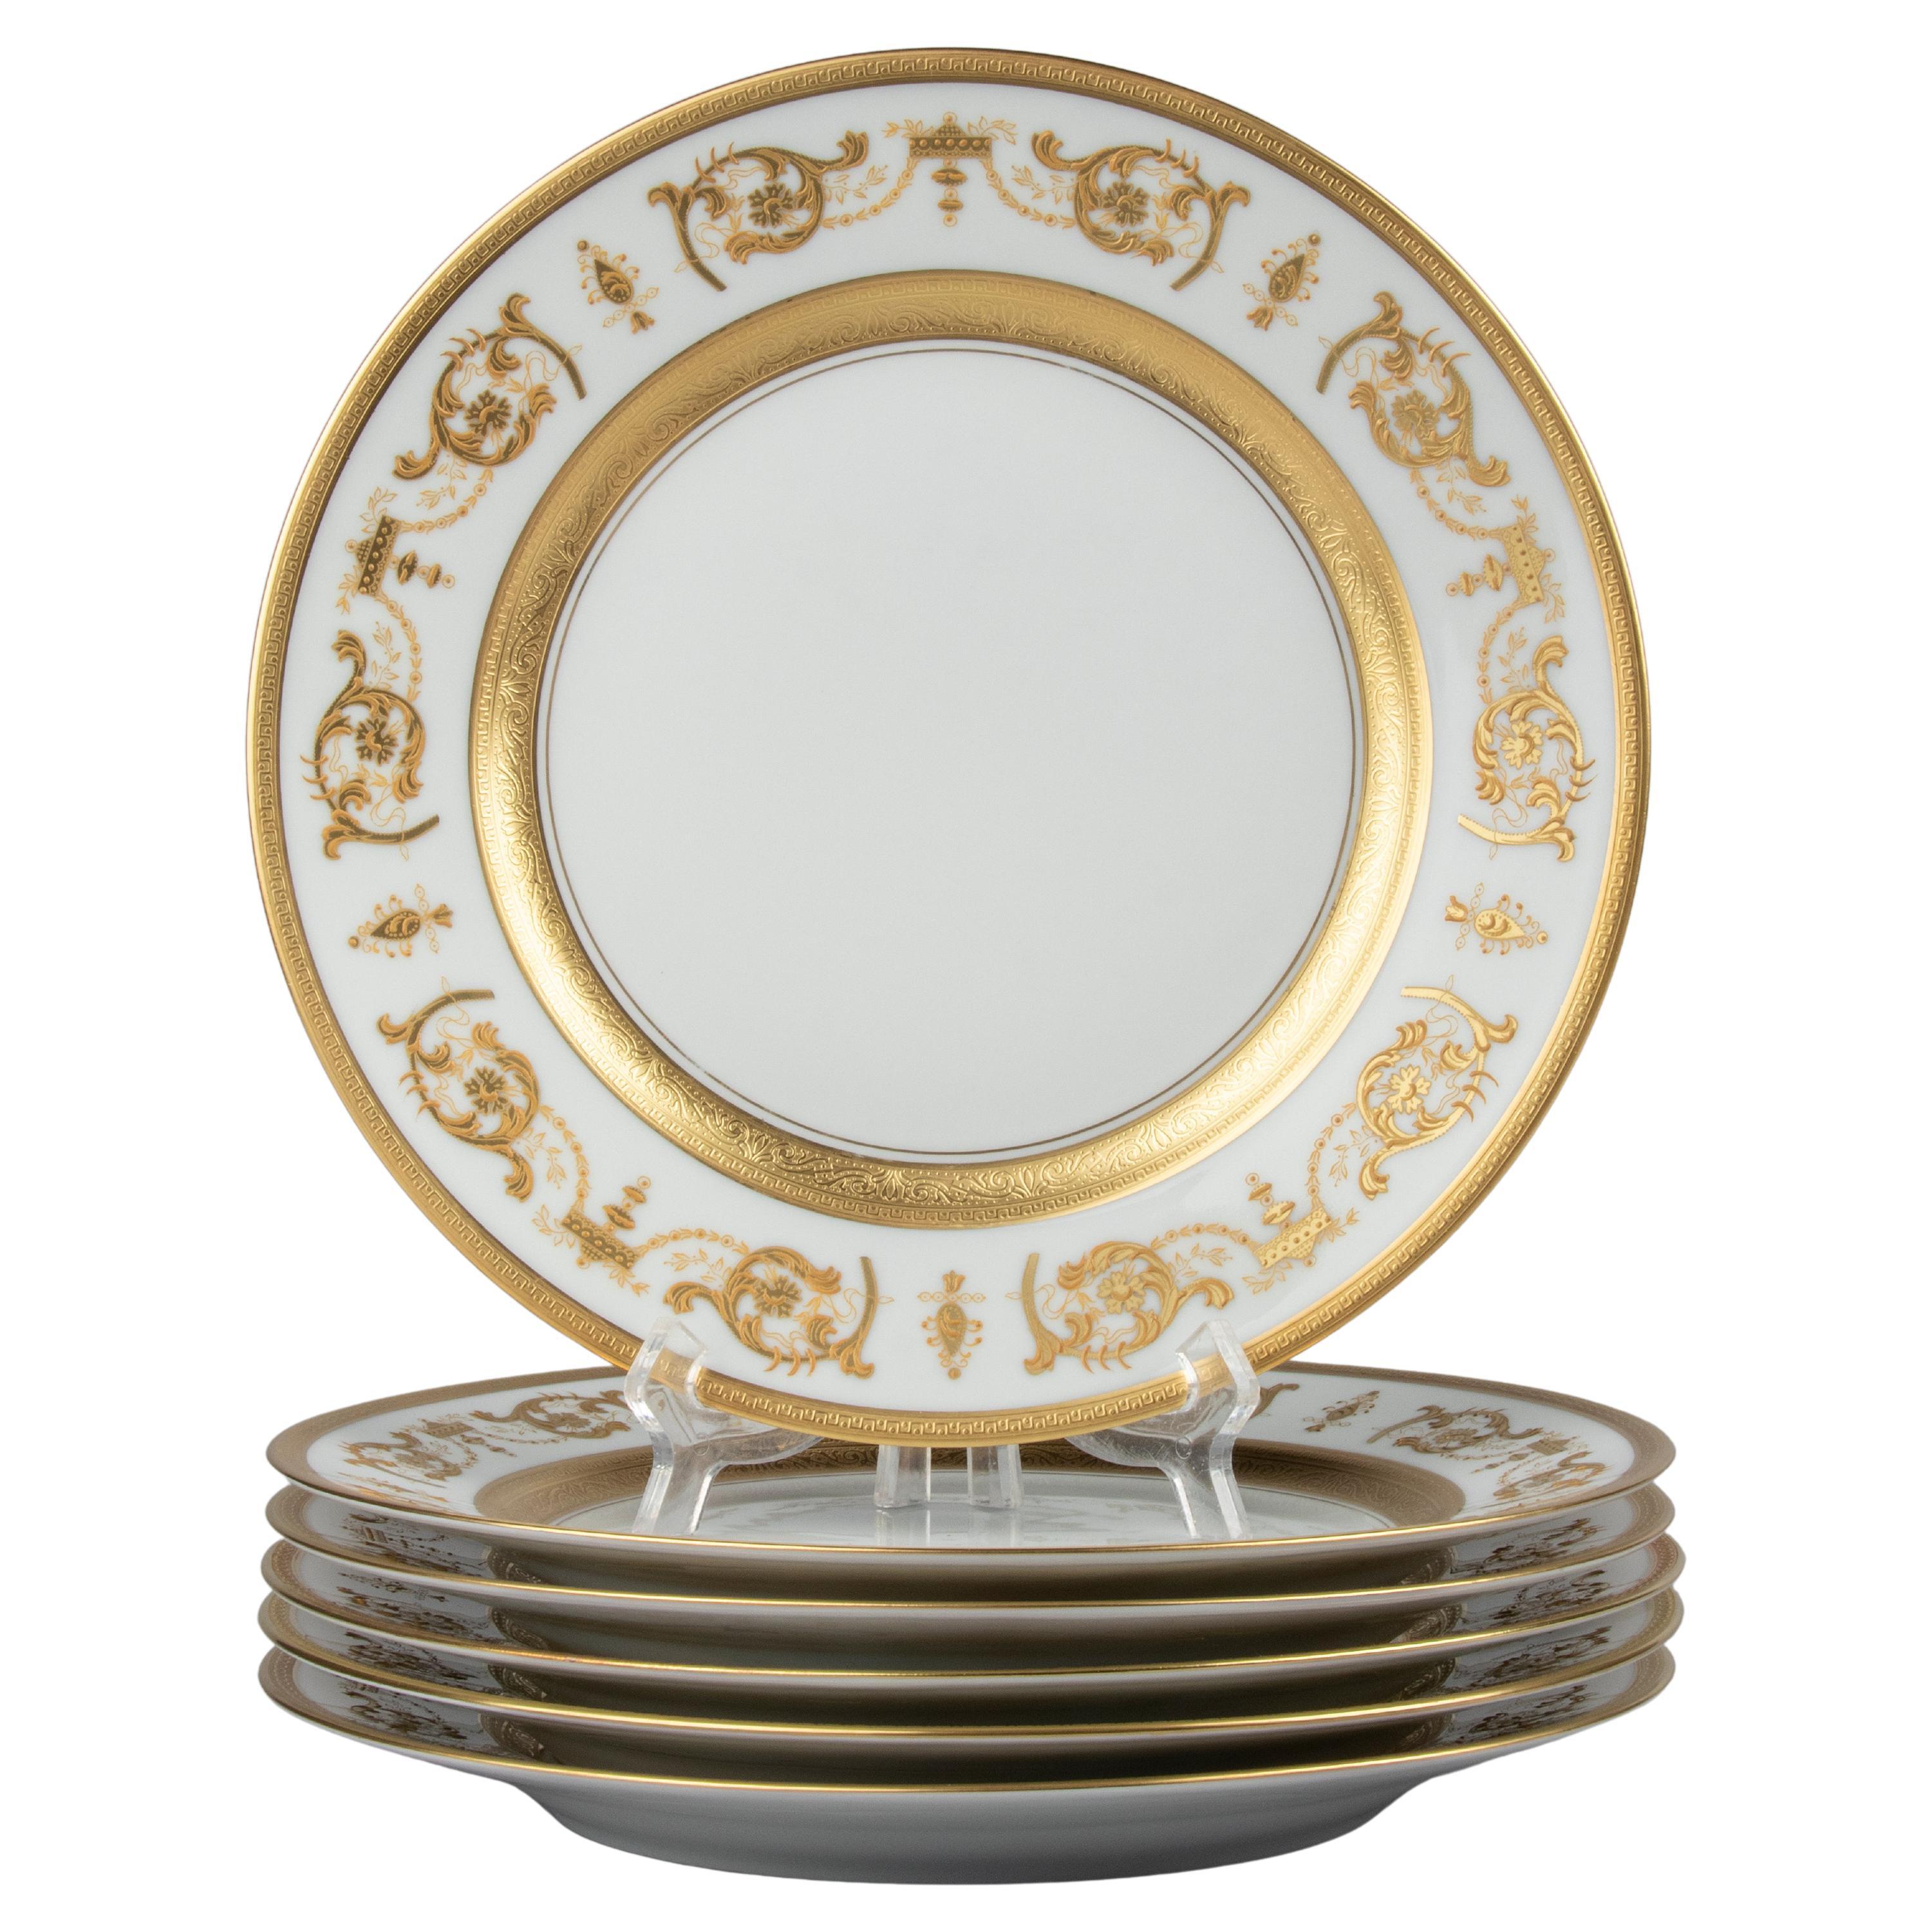 Set of 6 Porcelain Dinner Plates made by Haviland model Impérator Or